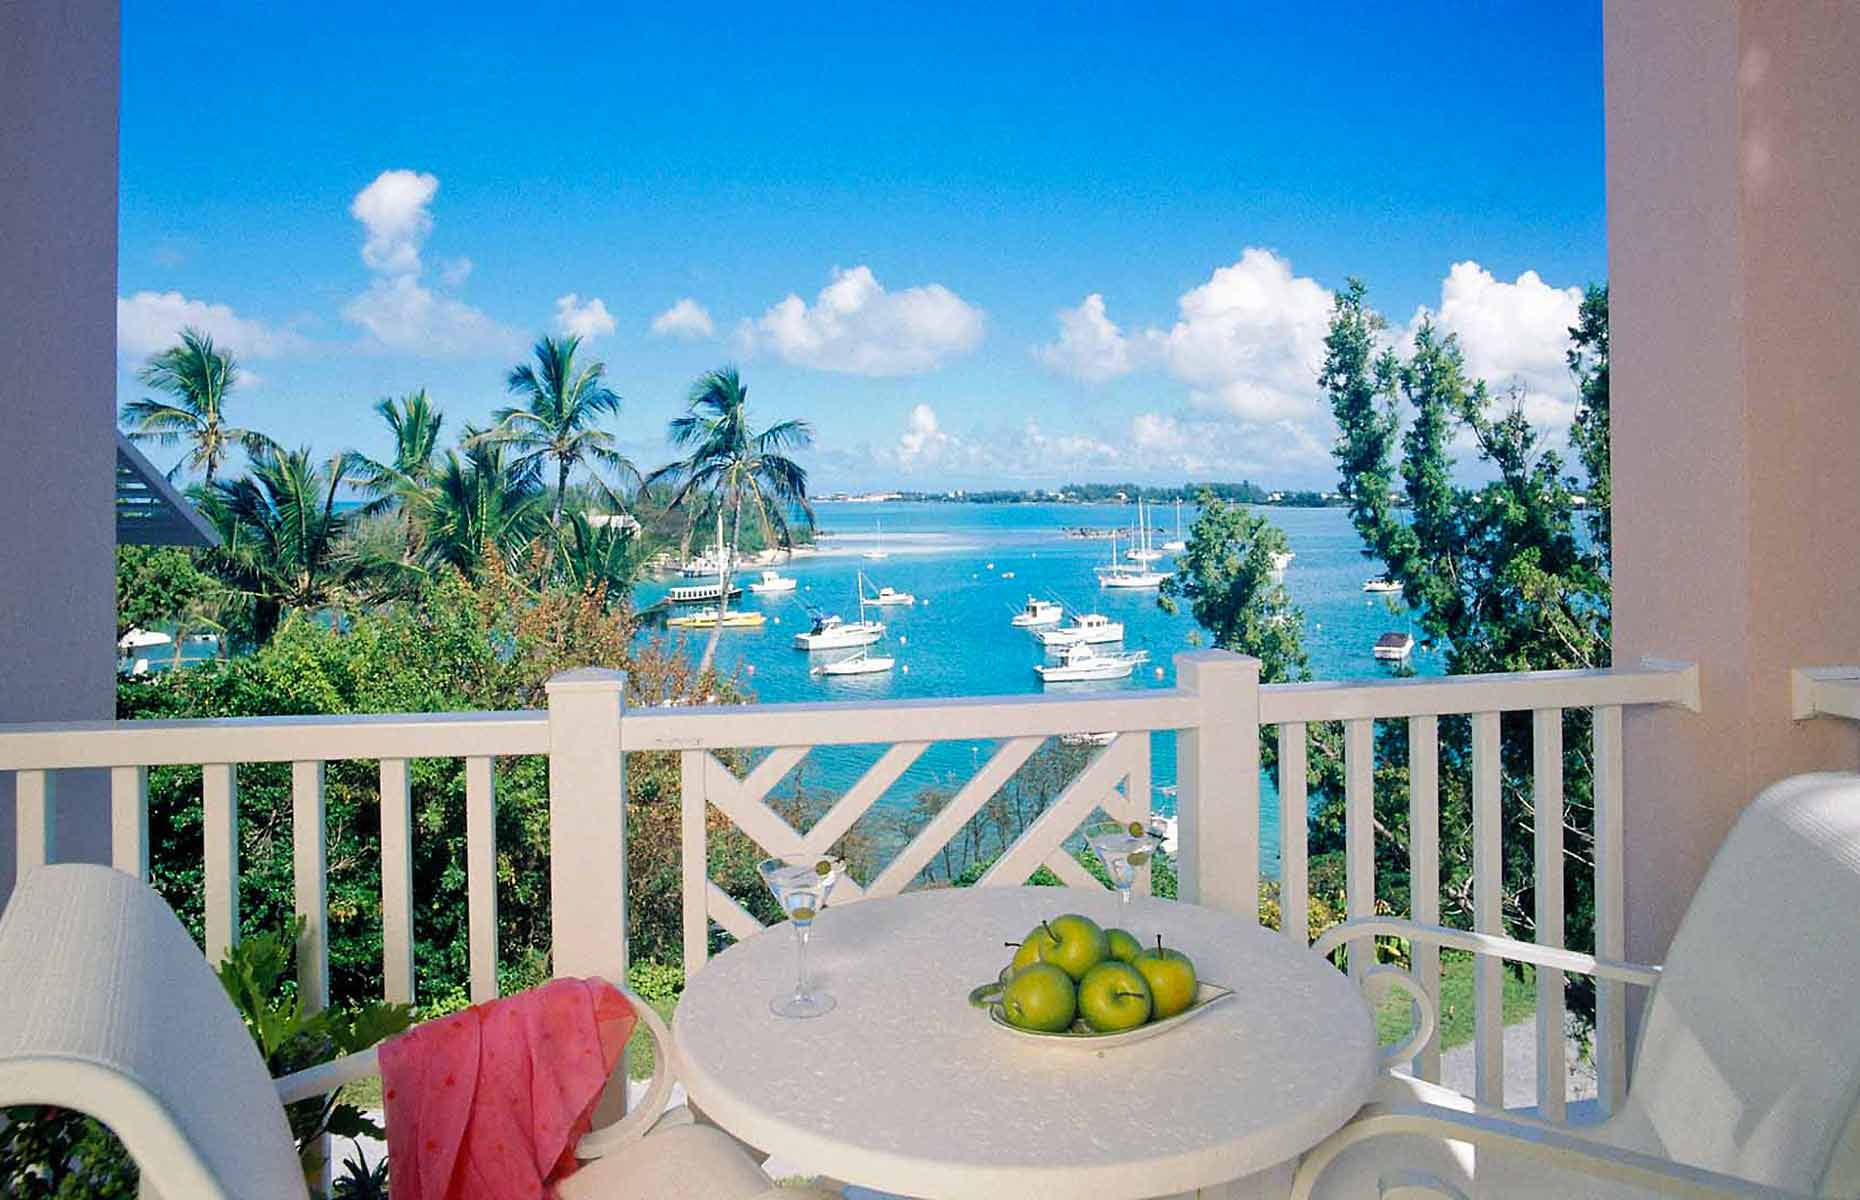 Cambridge Beaches - Séjour Caraïbes, Hôtel Bermudes